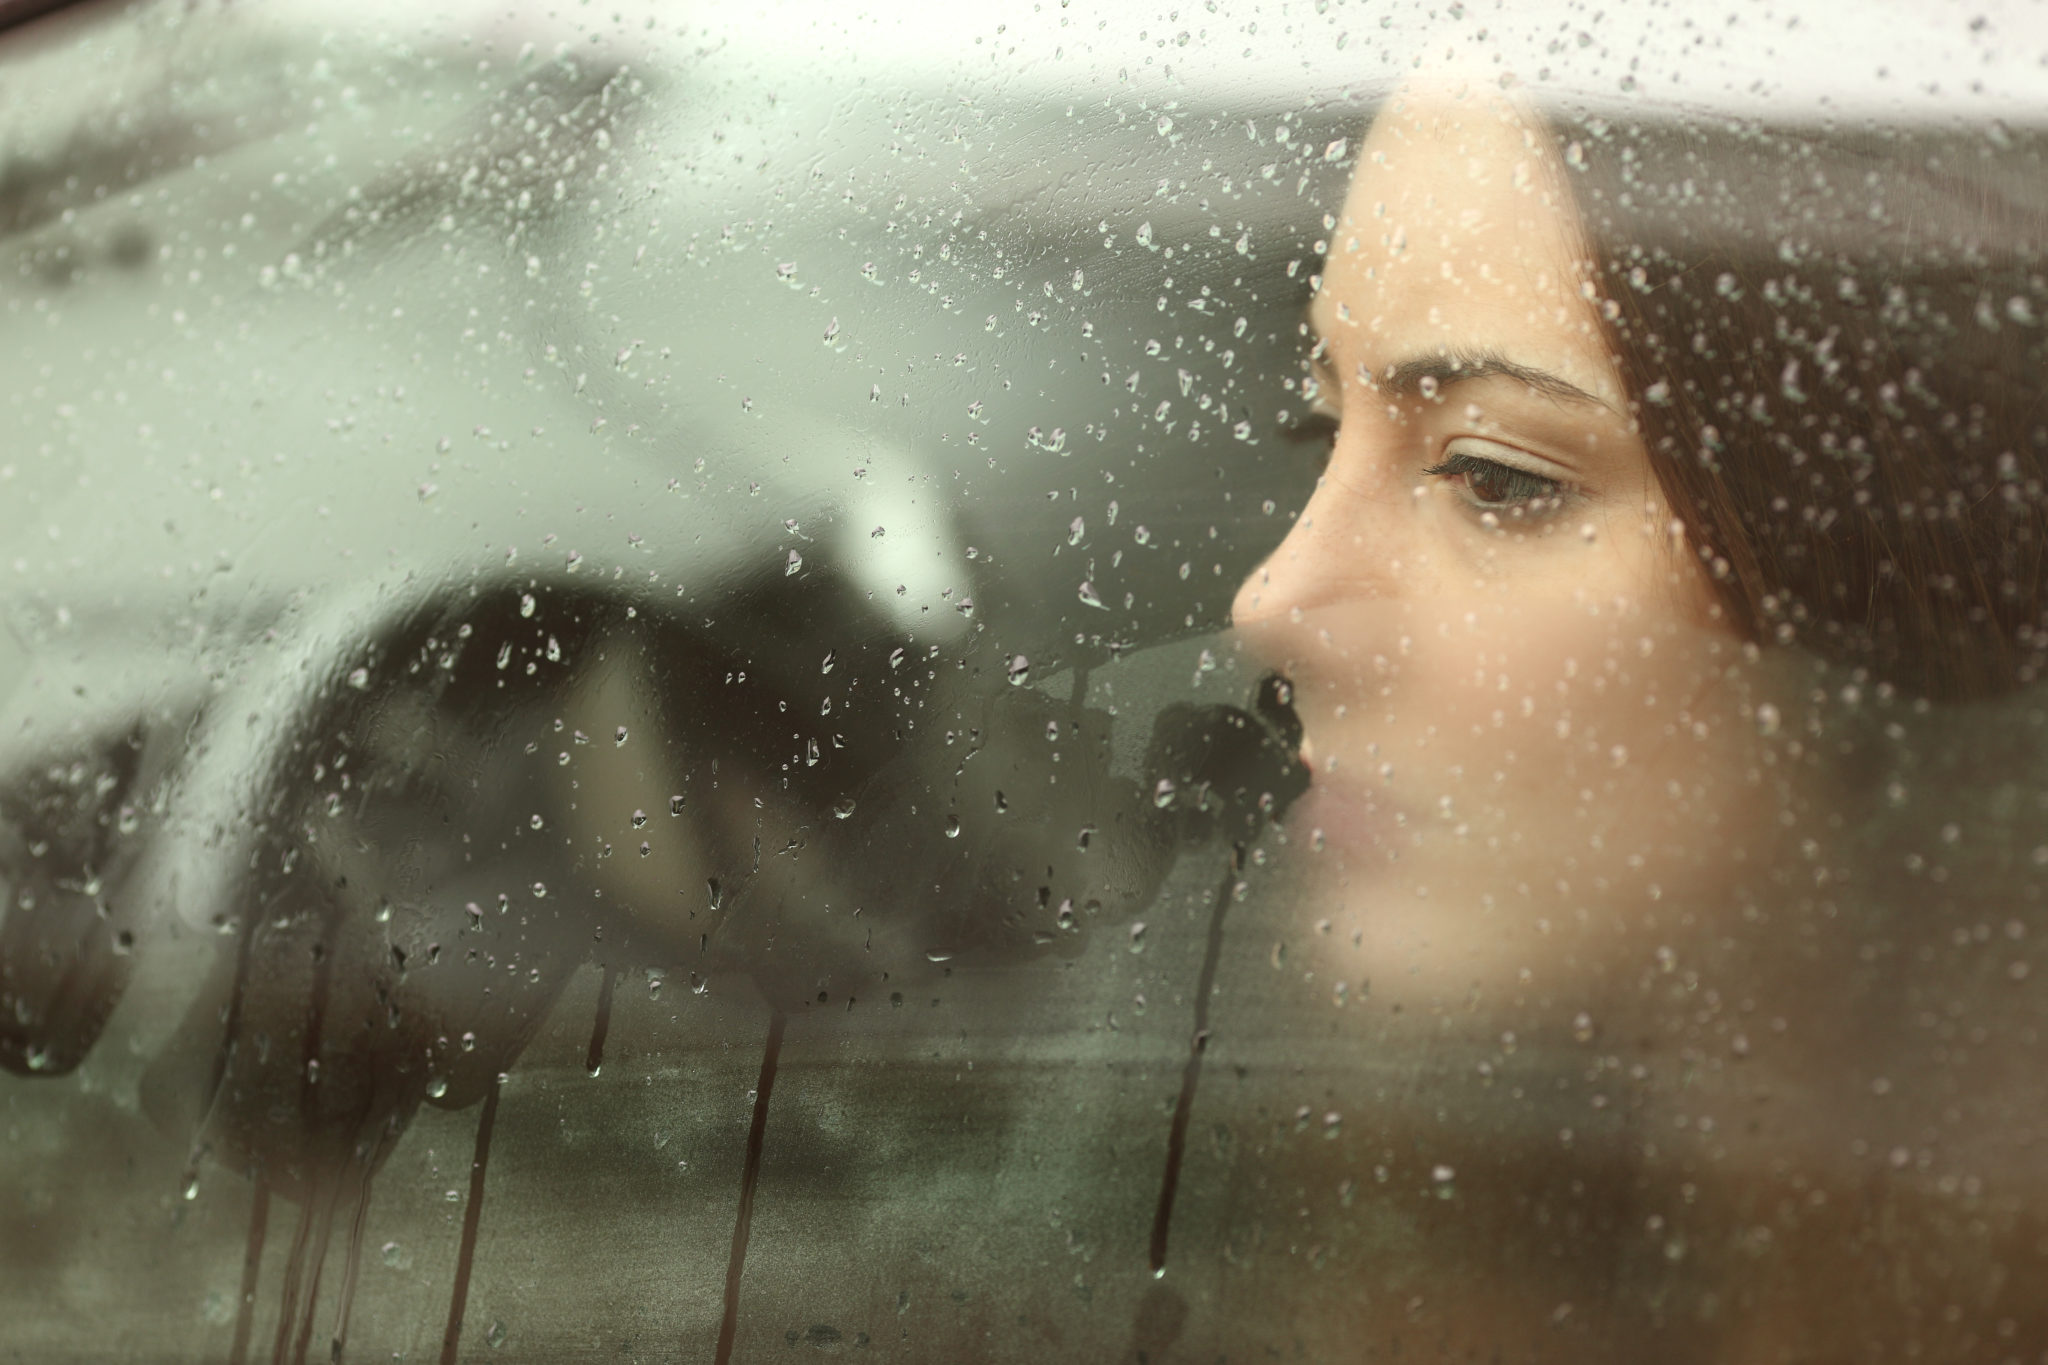 Sad woman looking through a steamy car window 2048 x 1365